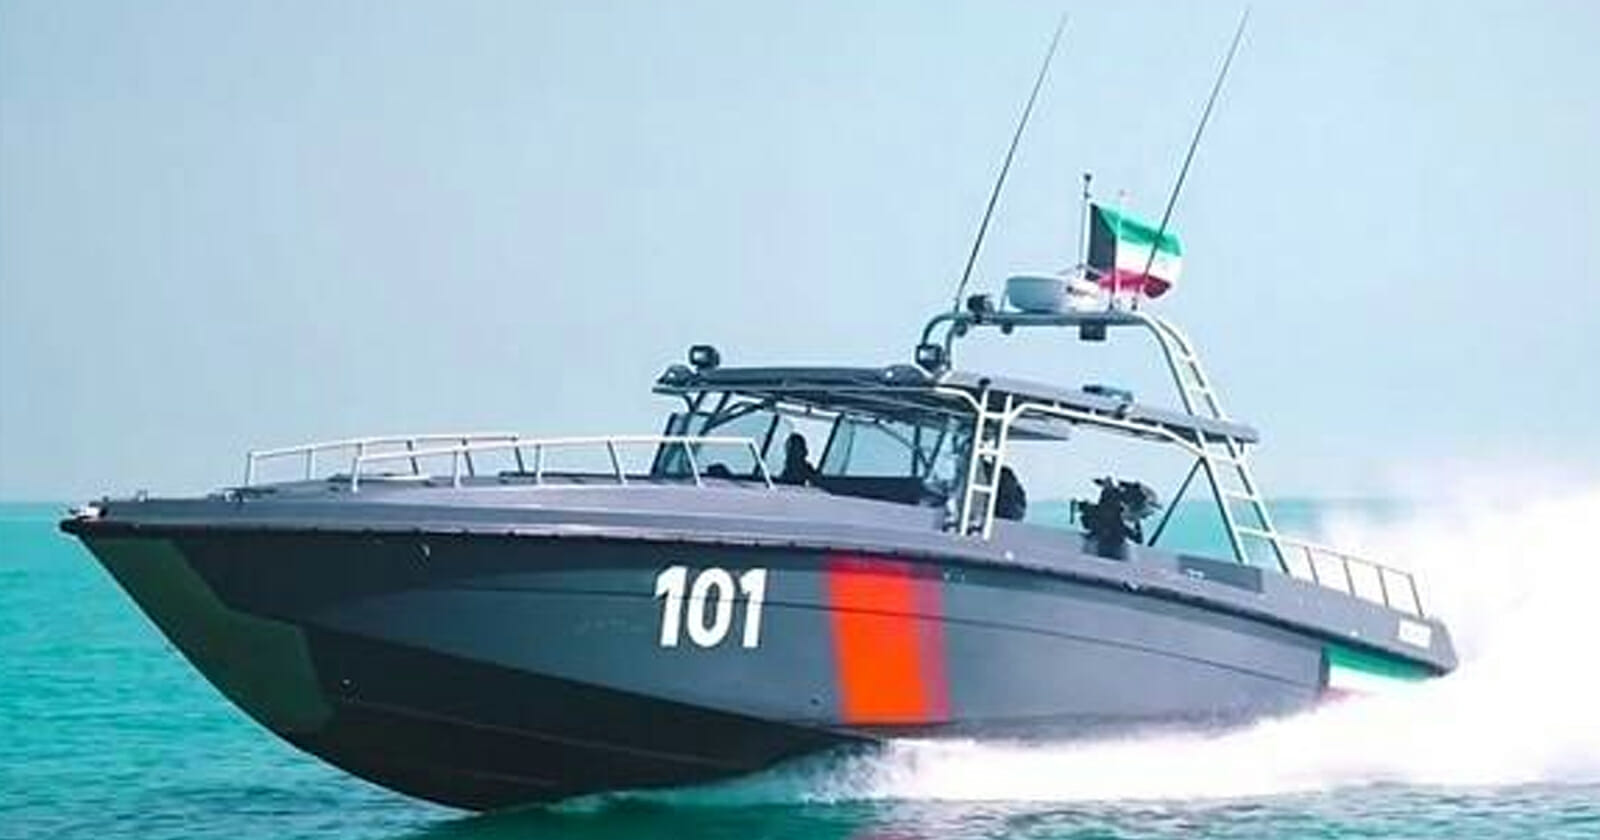 خفر السواحل الكويتي يطلق النار على صيادين عراقيين watanserb.com